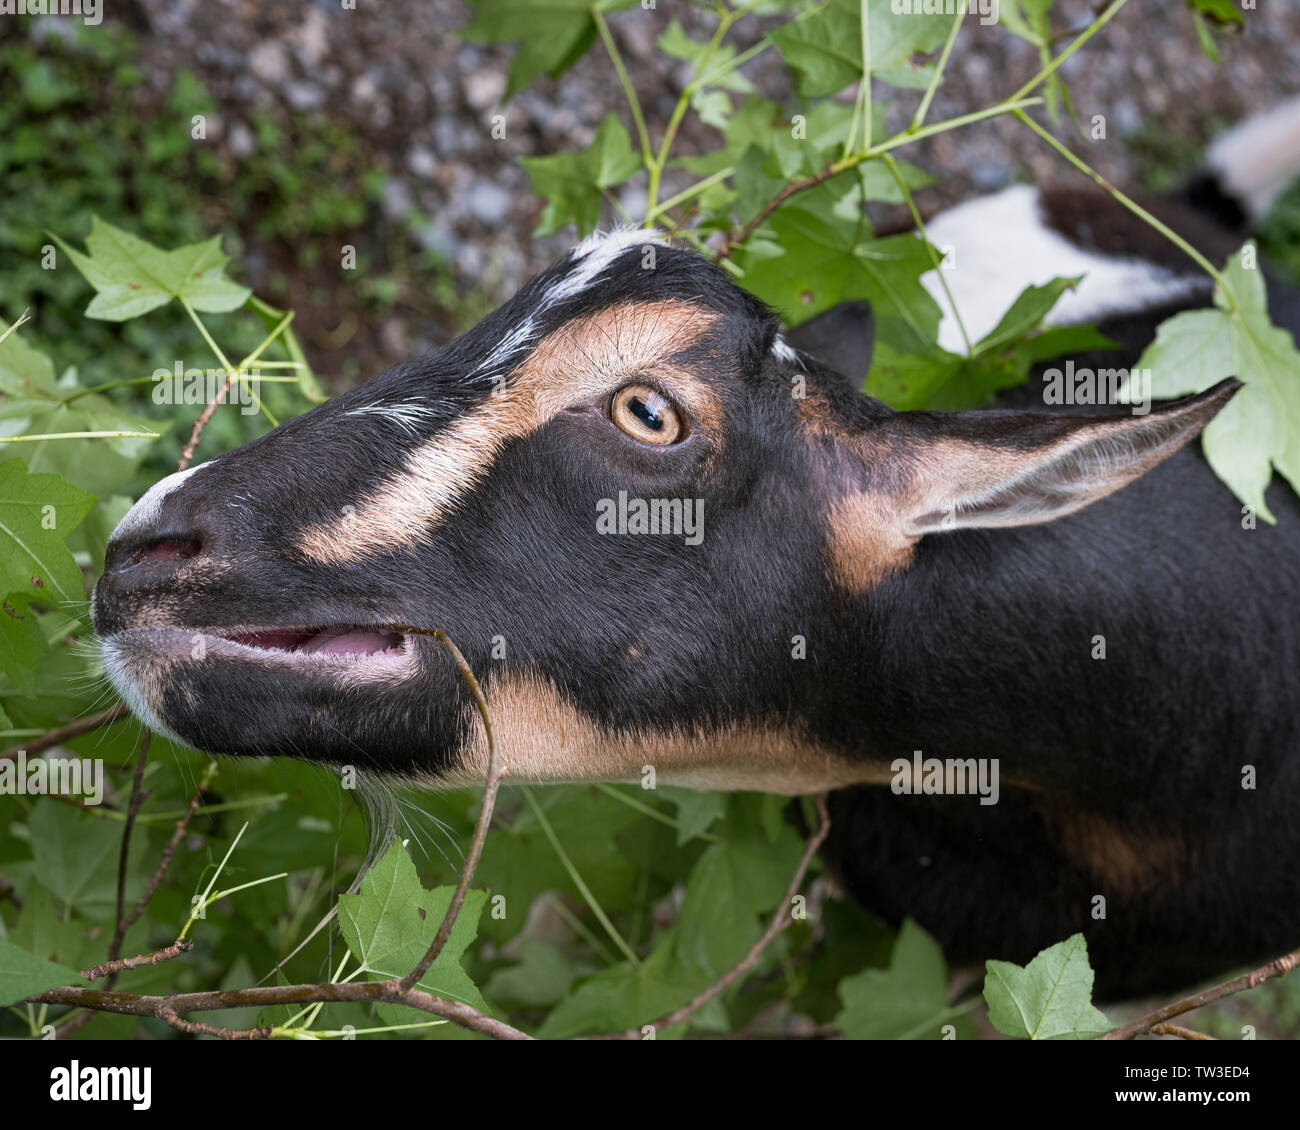 Nigerianische Zwerg Ziege essen Blätter Ahorn Baum. Ein Hobby Farm Haustier Ziege. Stockfoto